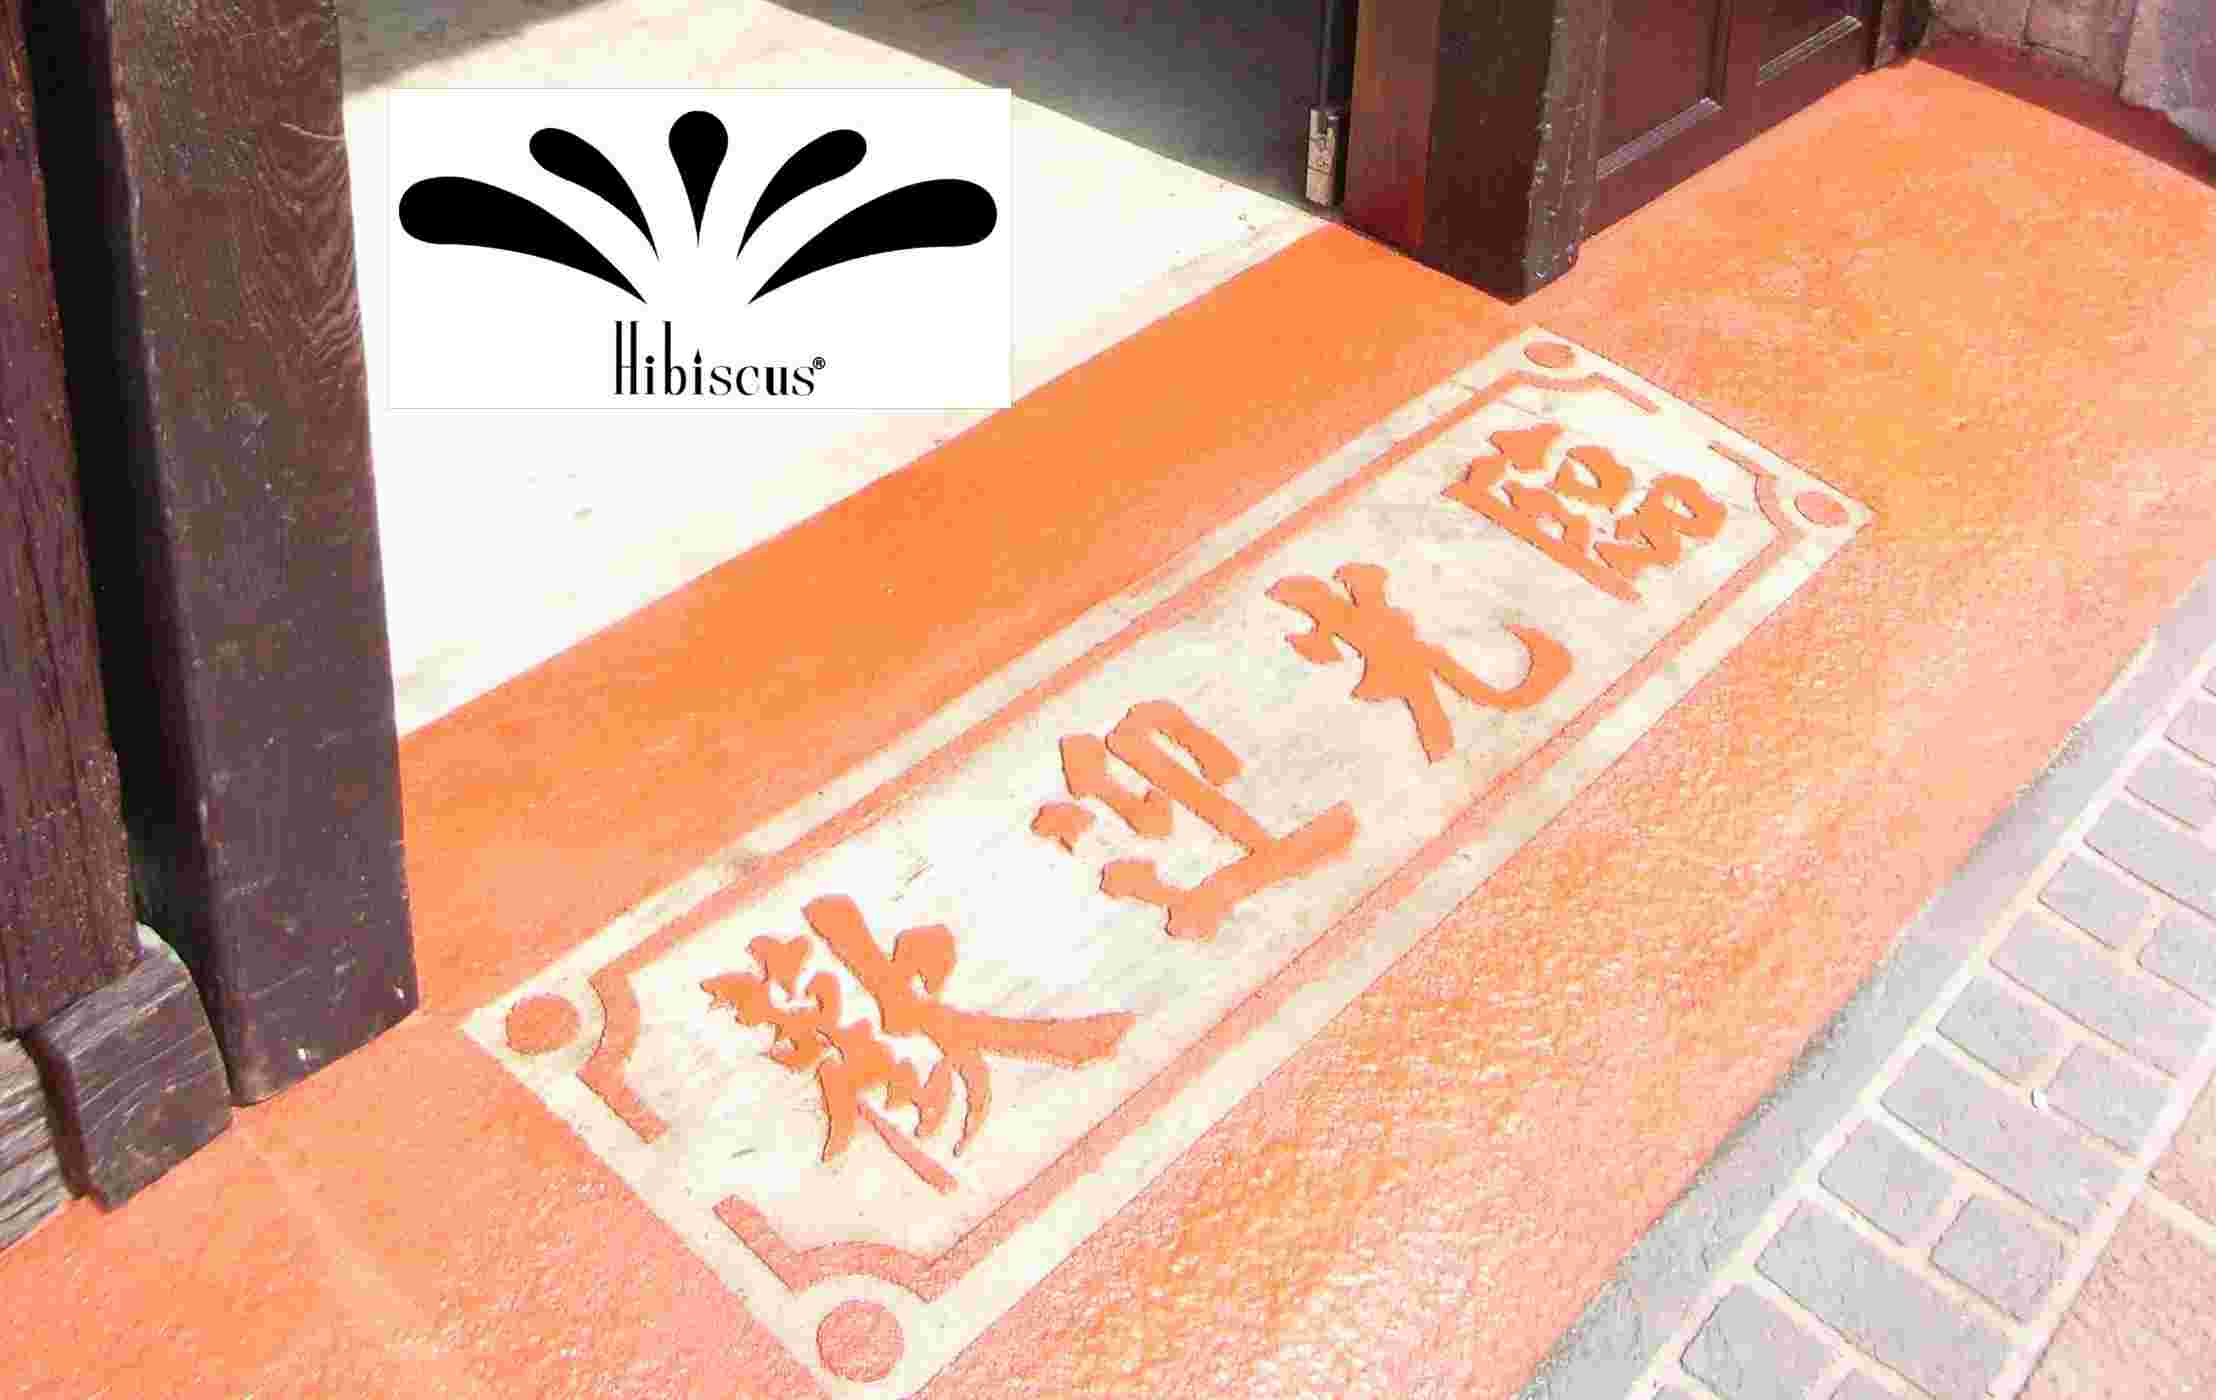 凡臣企業有限公司 彩色藝術水泥地板 創意樣式圖騰Logo空間景觀設計全省專業施工